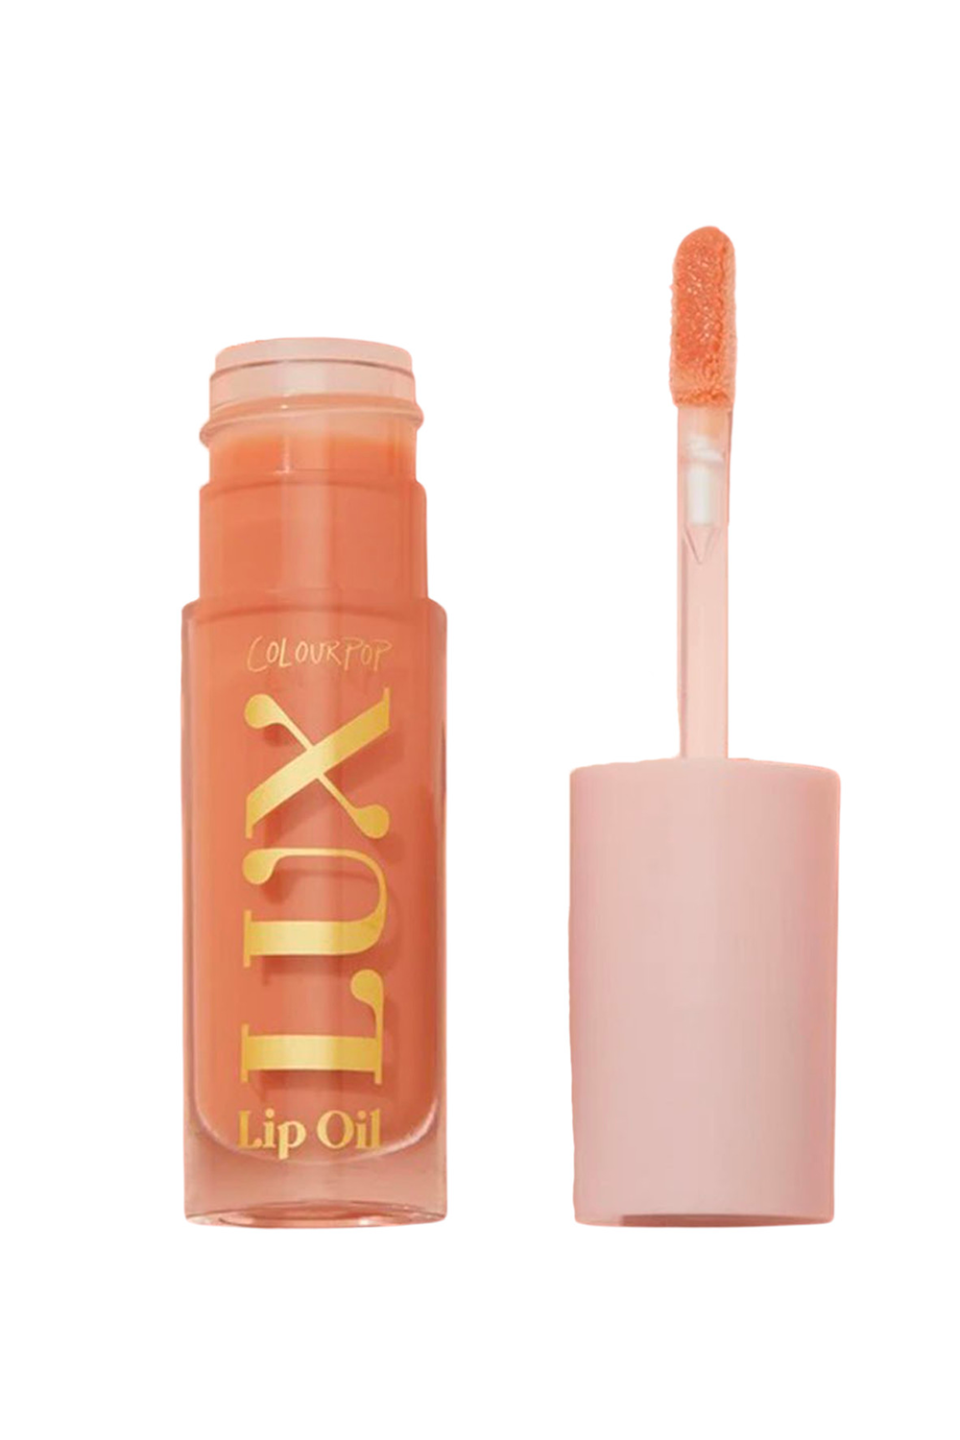 3) ColourPop Lux Lip Oil